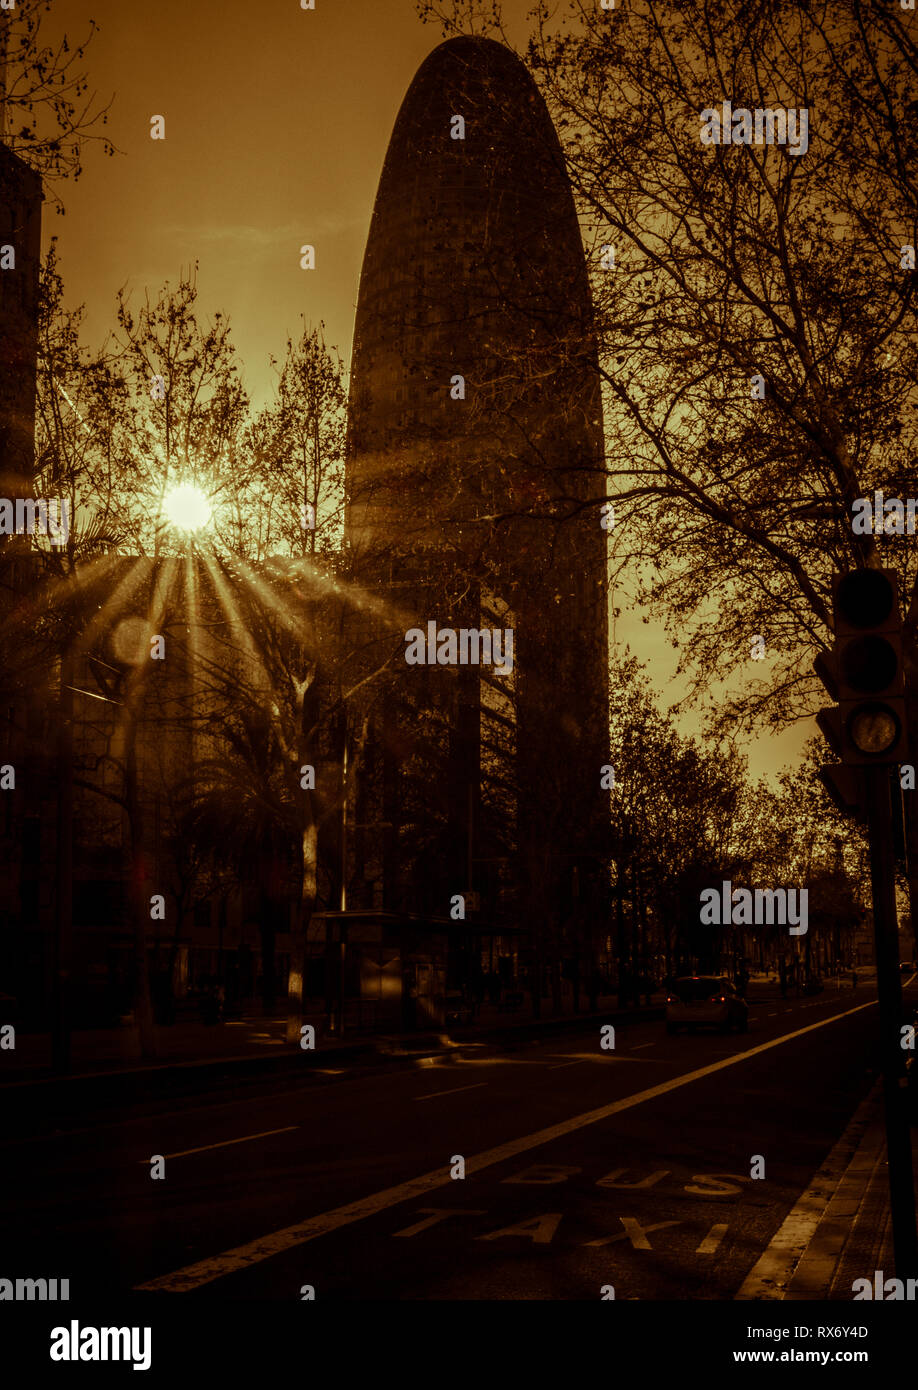 Image de ton Split Torre gloires, anciennement connu sous le nom de Torre Agbar, sur l'Avenida Diagonal avec la solarisation et lens flare, Barcelone, Catalogne, Espagne Banque D'Images